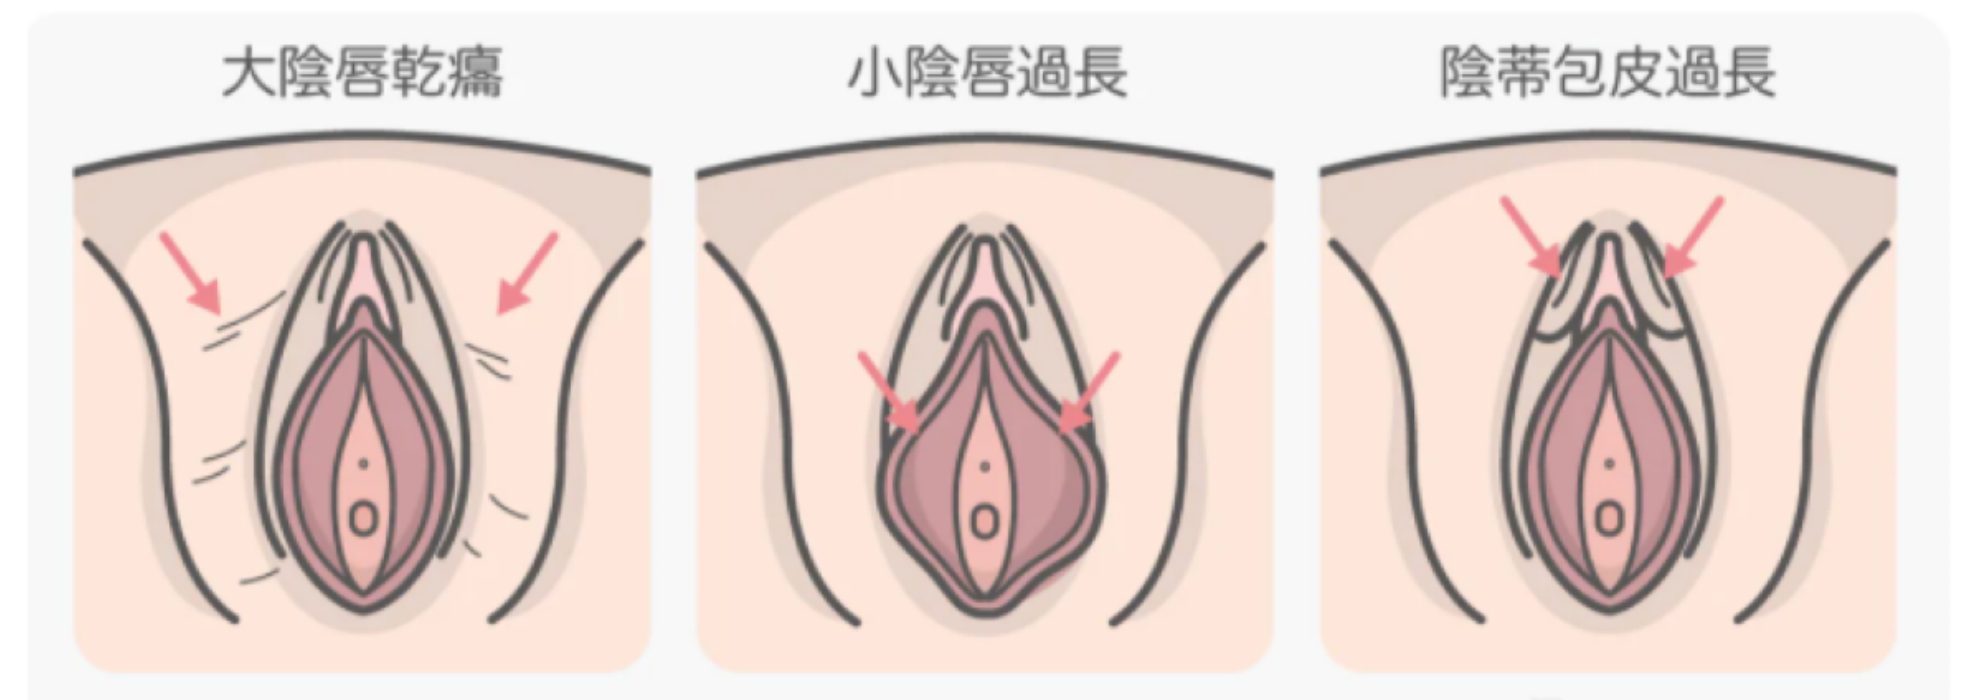 私密處構造：左邊大陰唇乾扁、中間小陰唇過長、右邊陰蒂包皮過長。